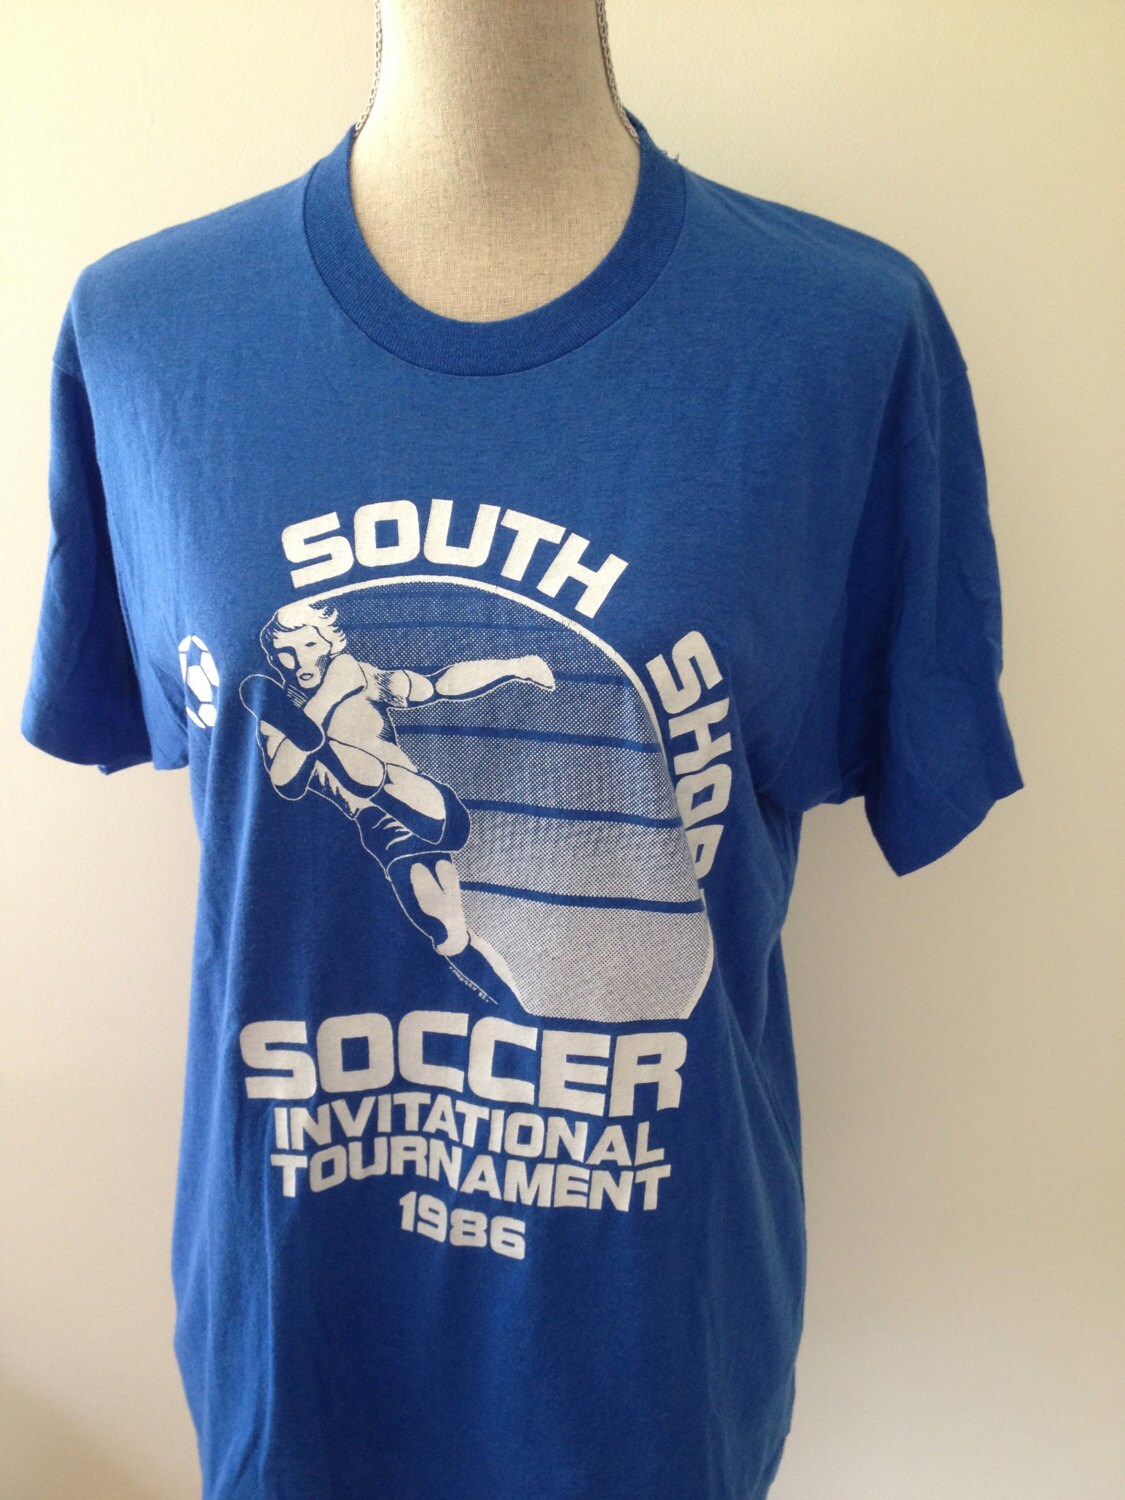 Vintage Soccer Tshirts | Etsy